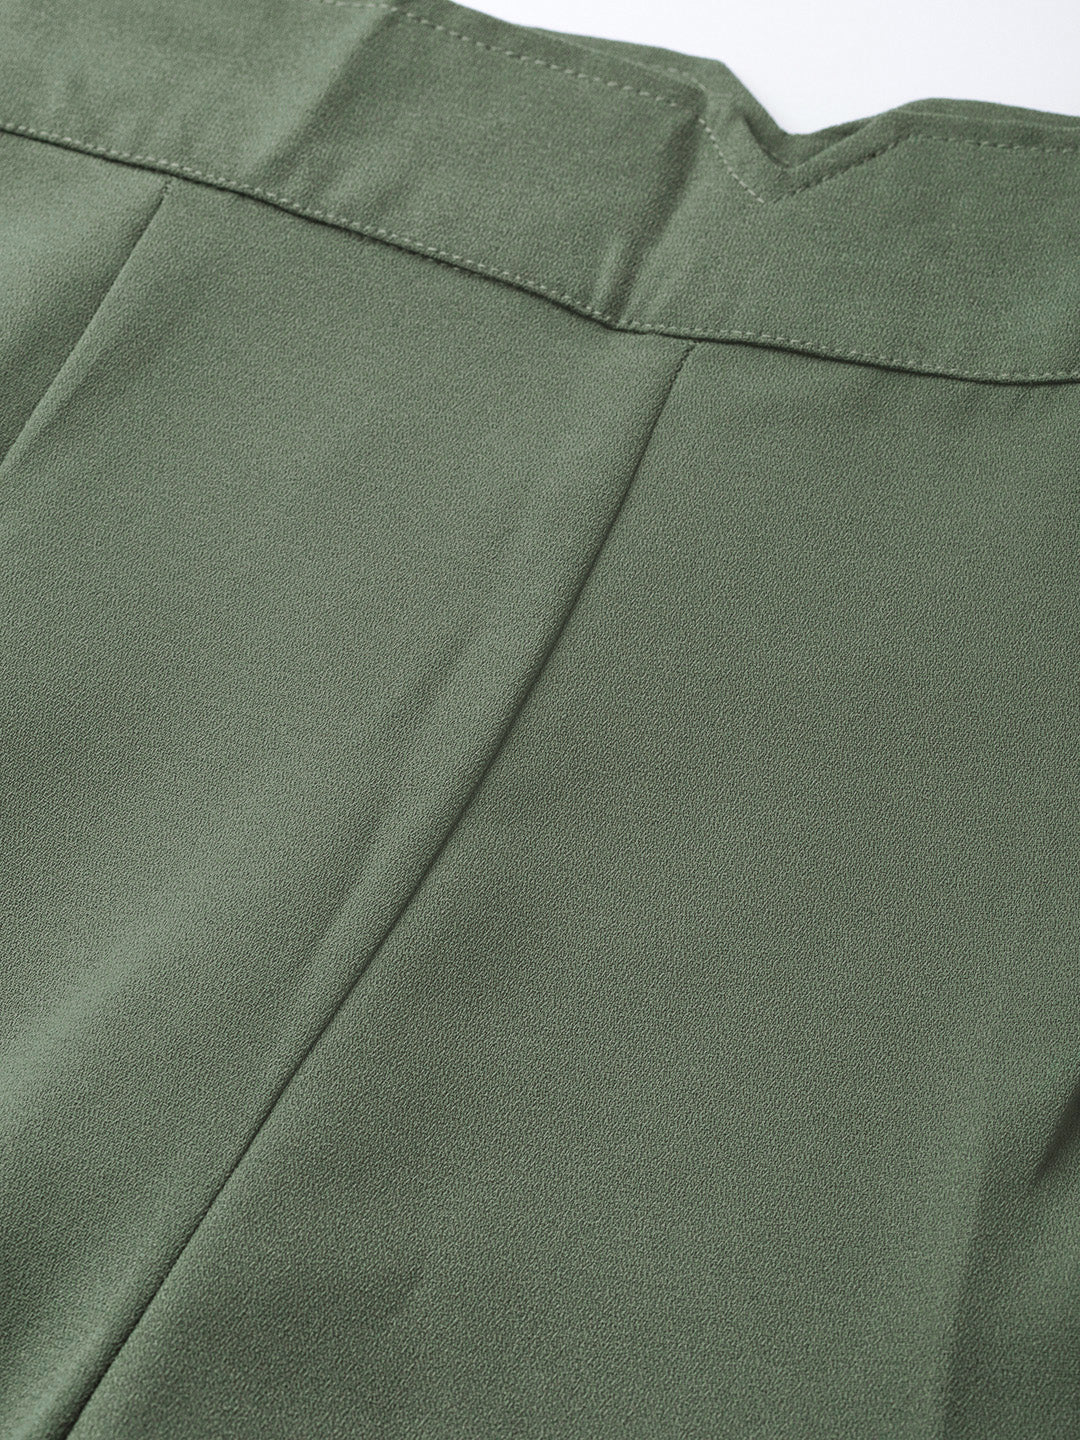 Olive Side Zipper Pant